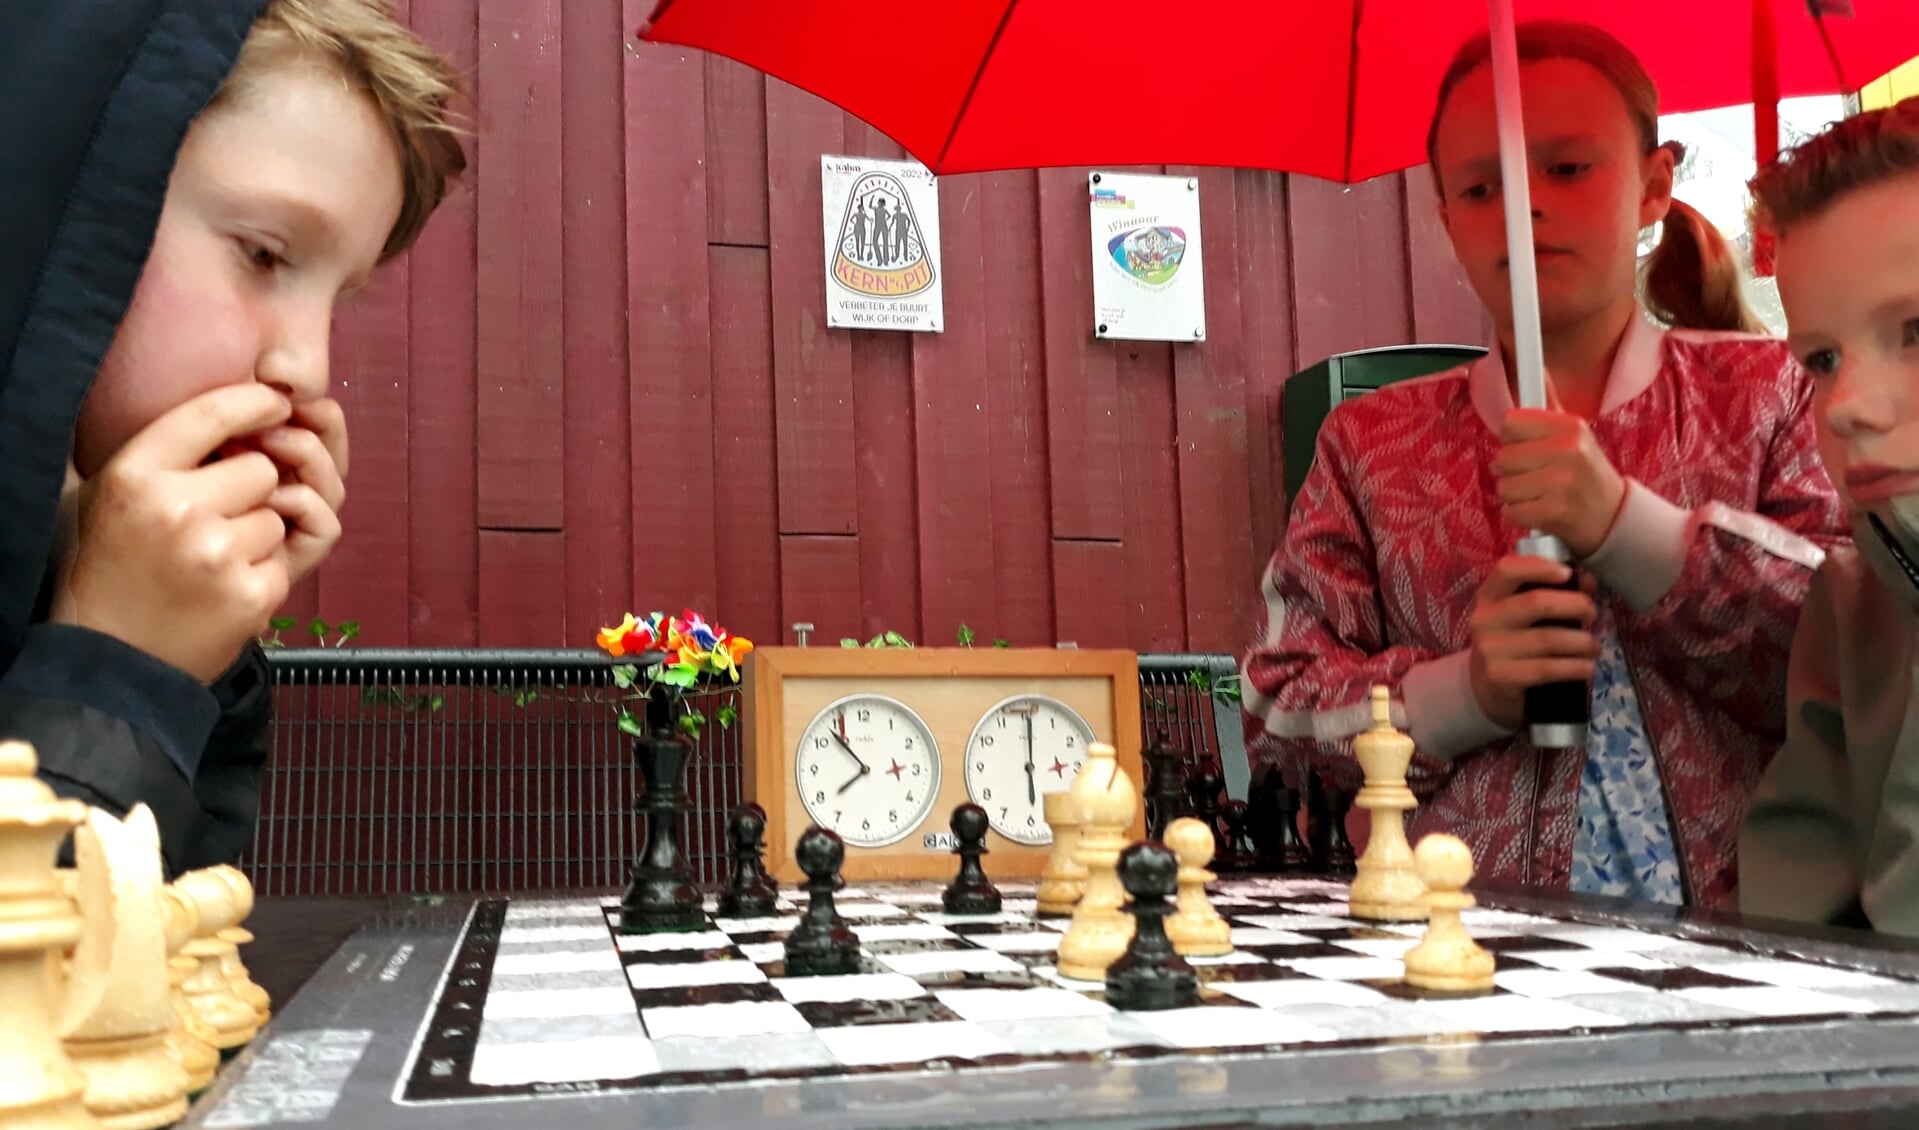 Matthijs en Wietze schaken onverstoorbaar door